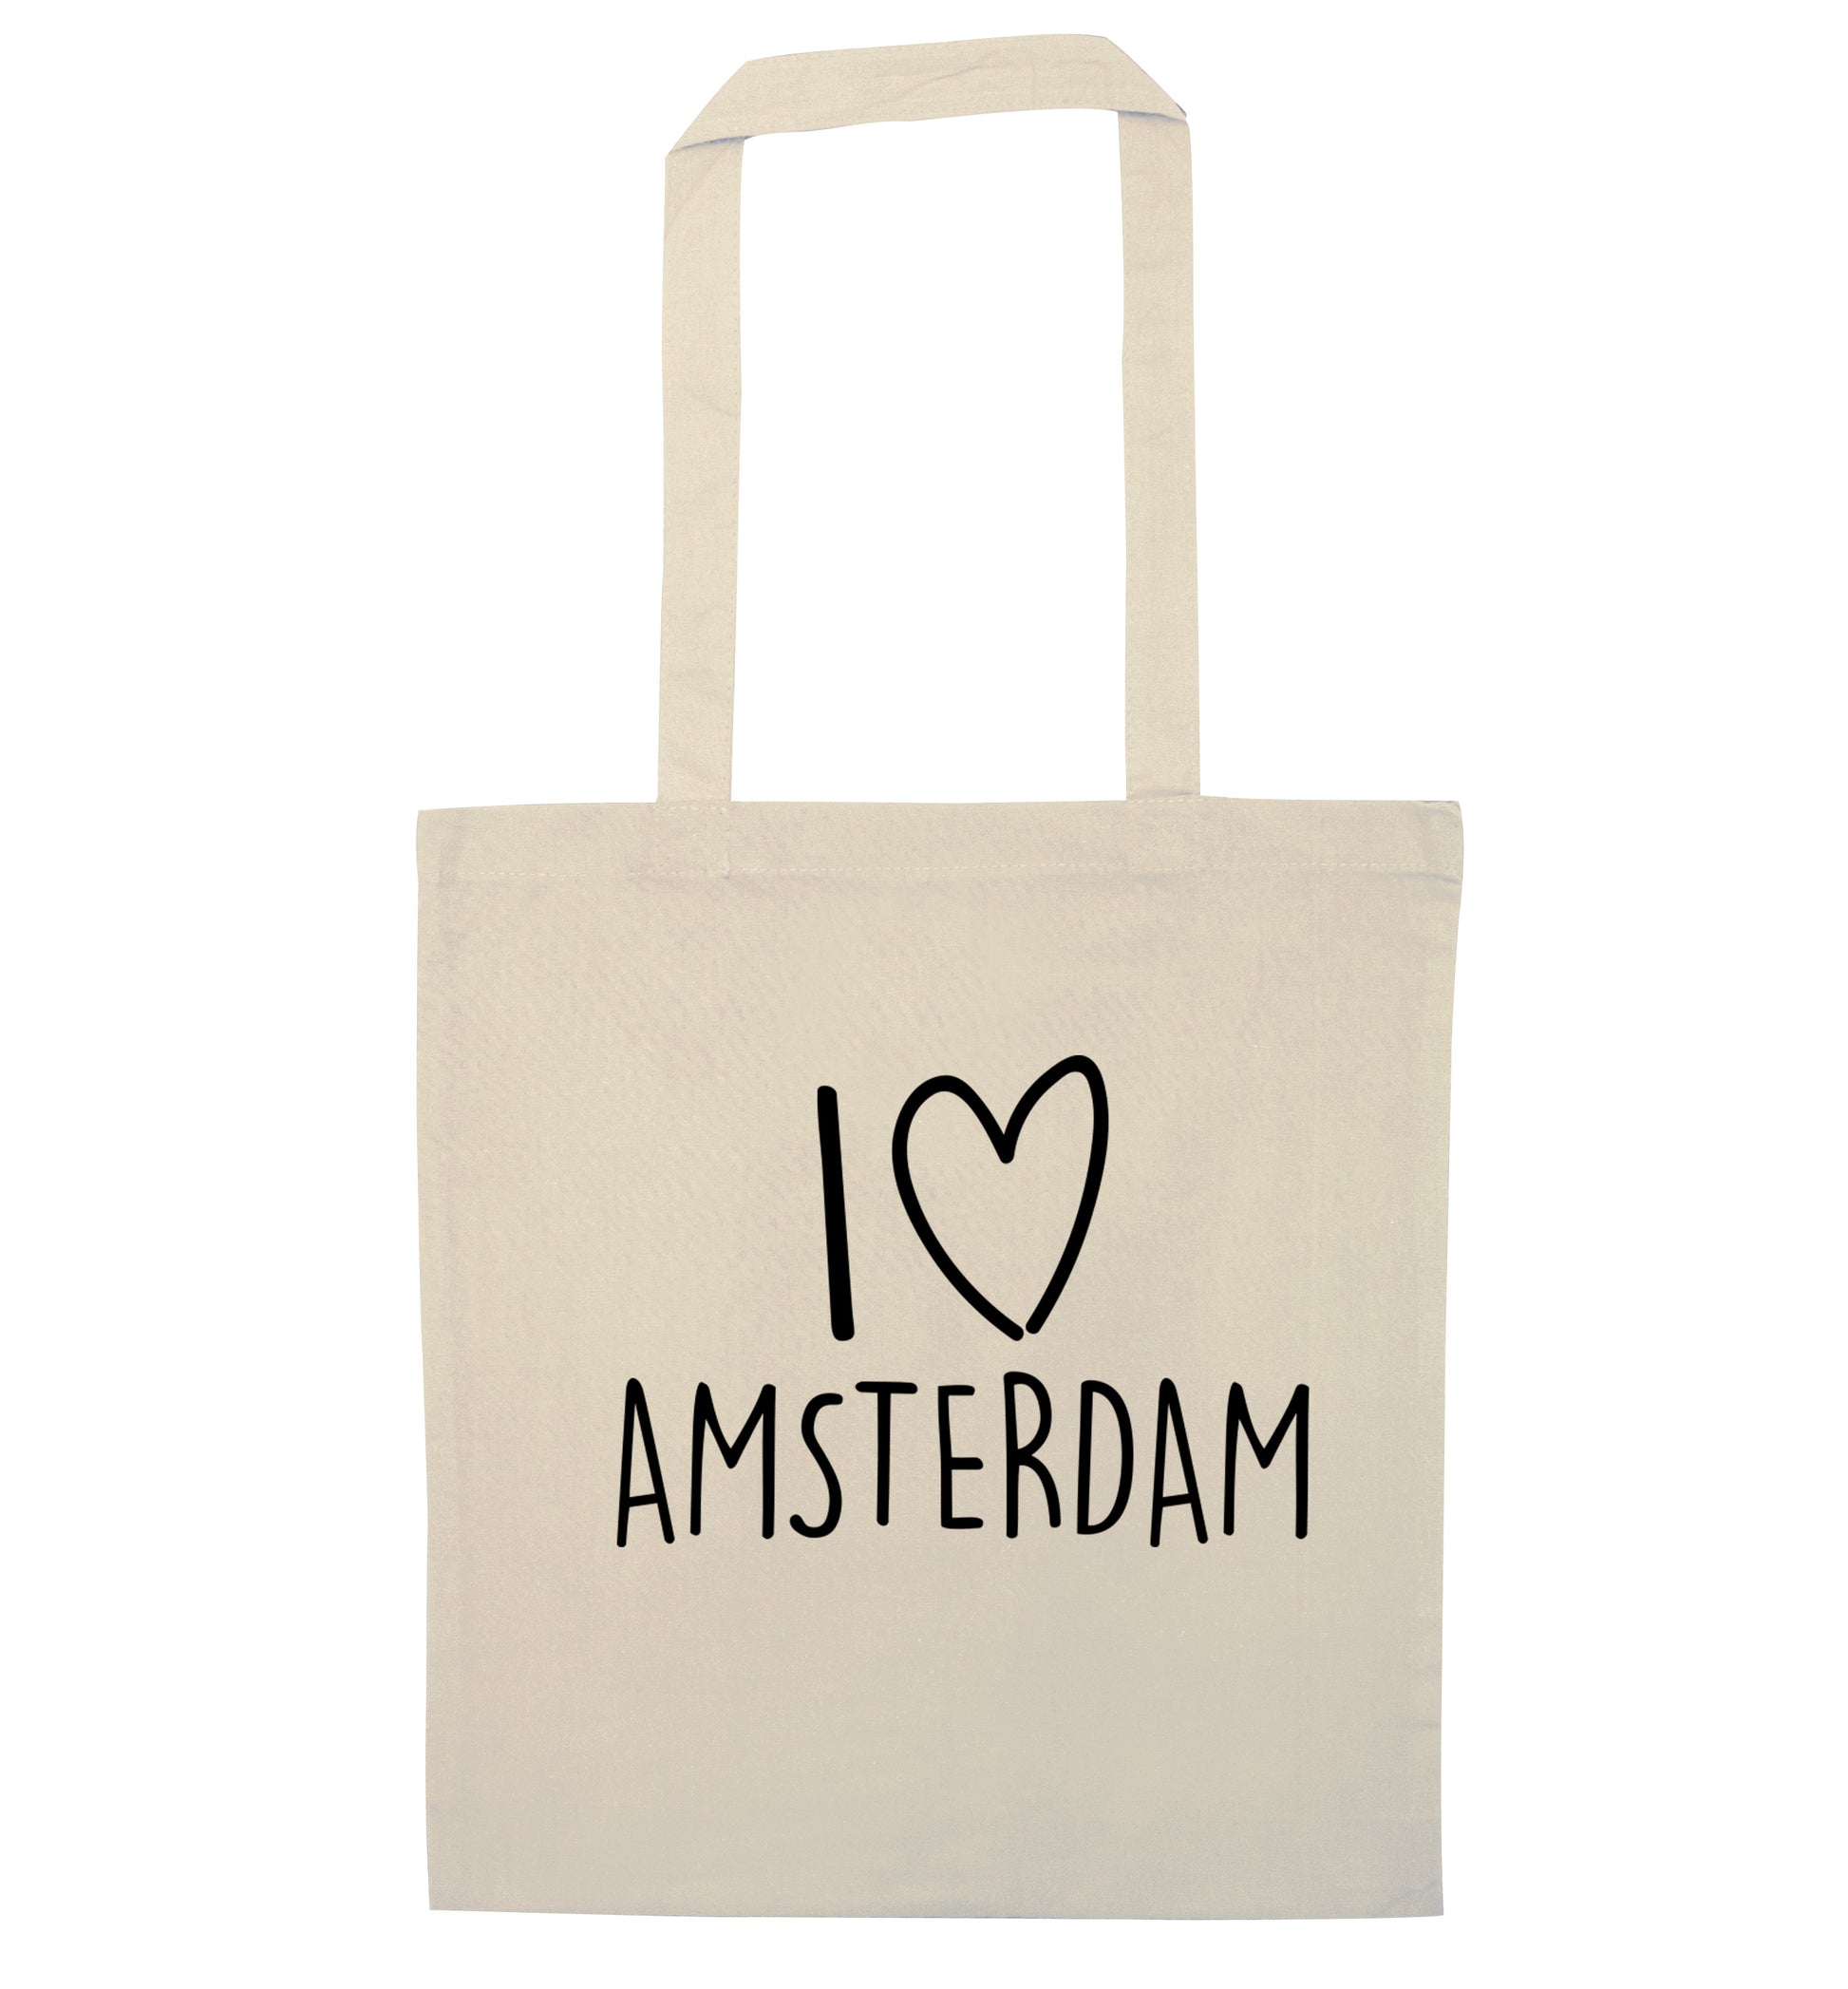 I love Amsterdam natural tote bag